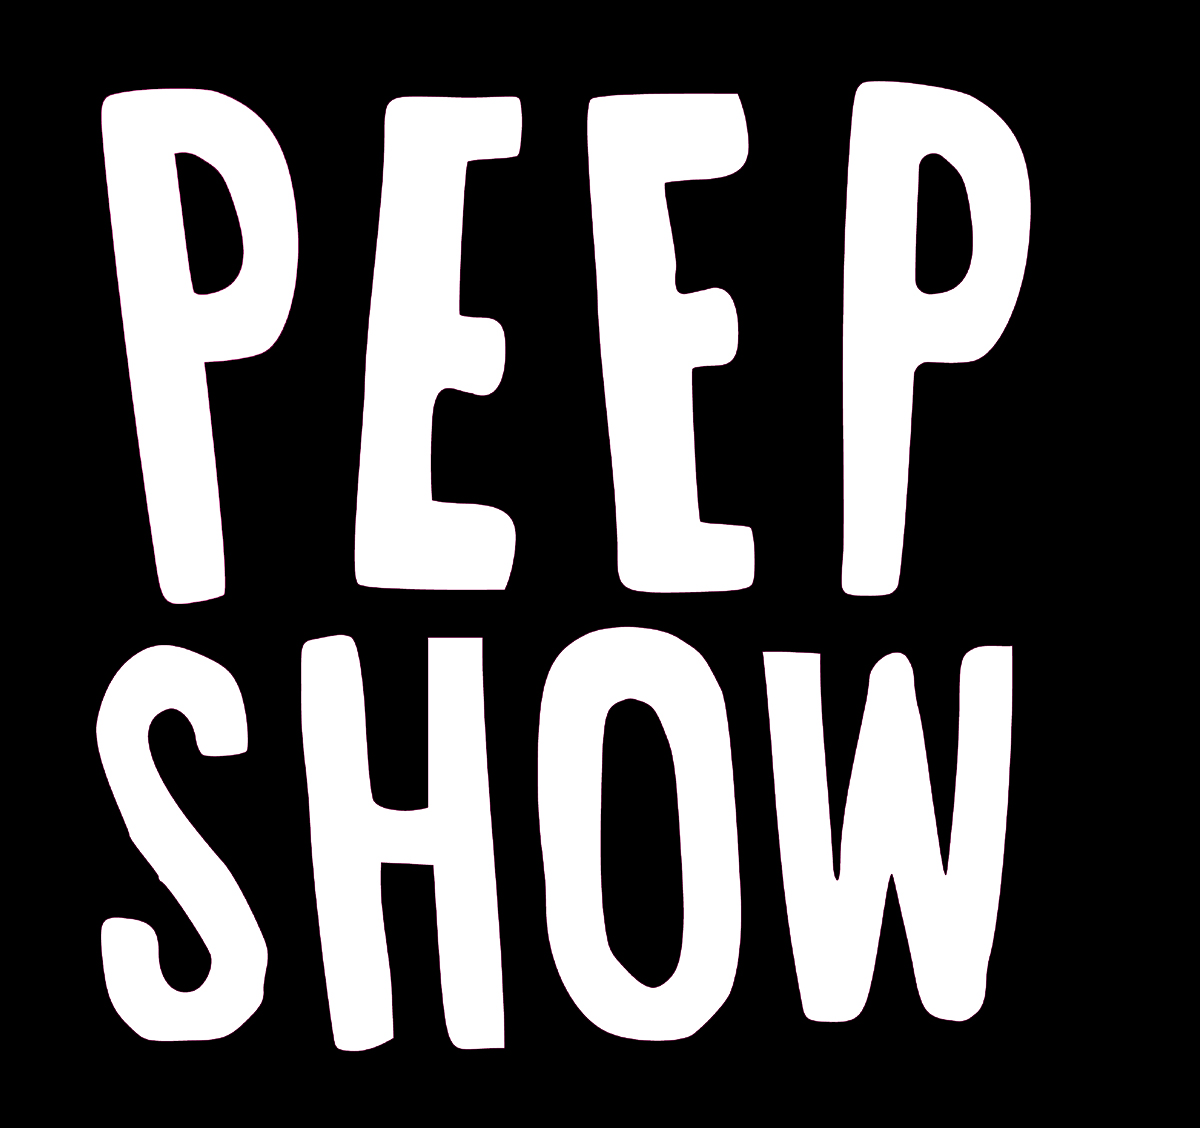 peep show logo black and white